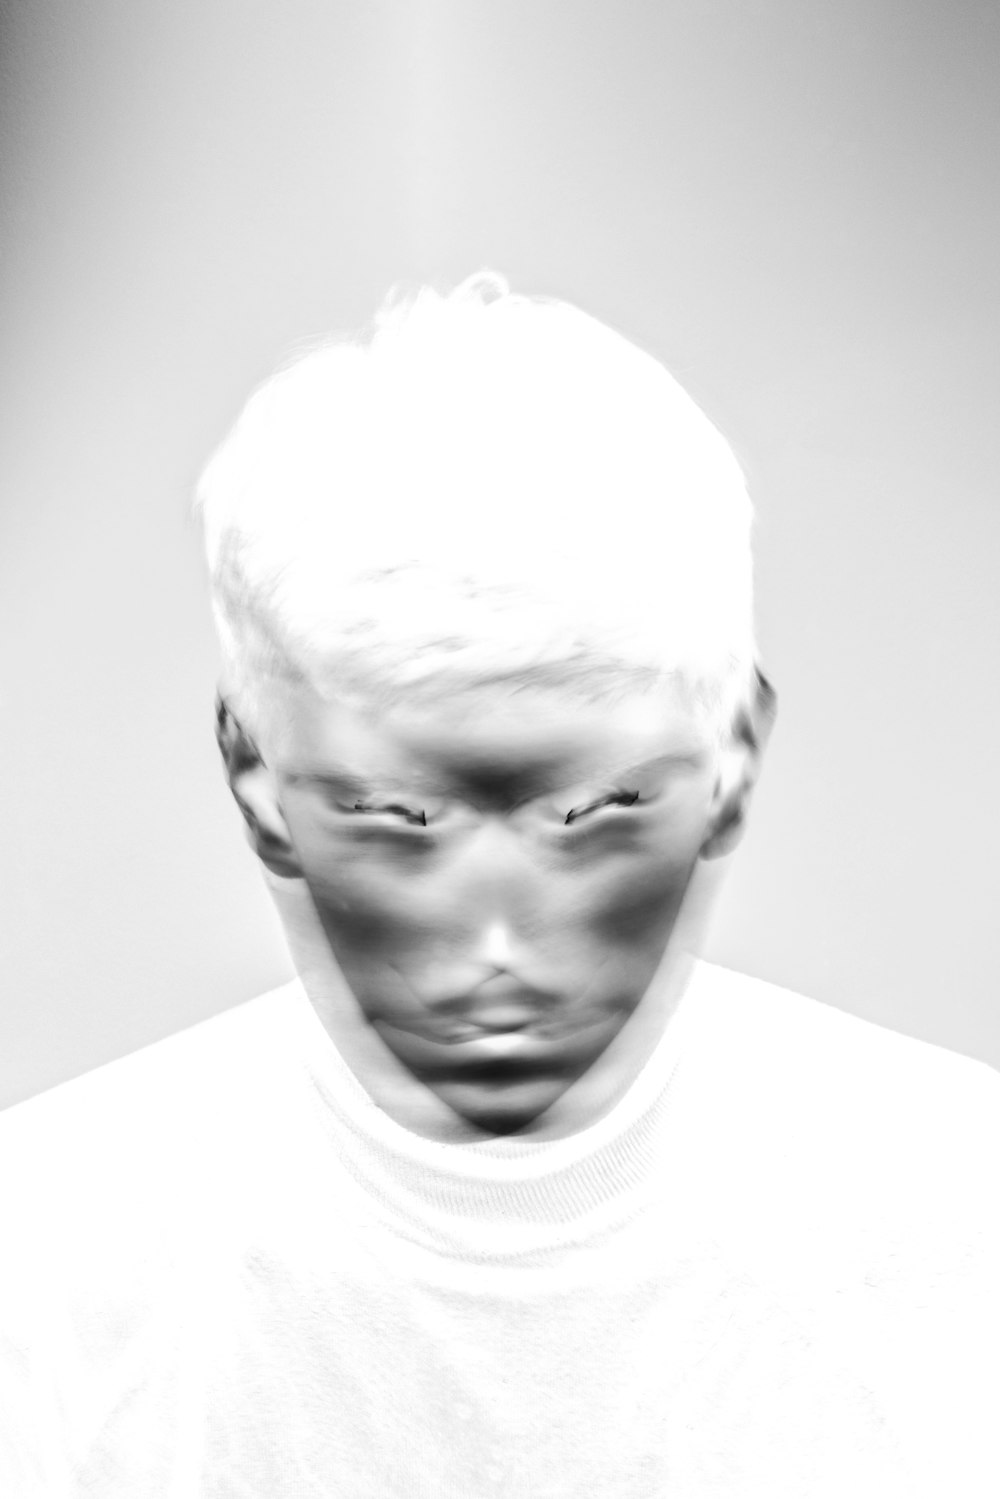 Una foto en blanco y negro de la cara de un hombre